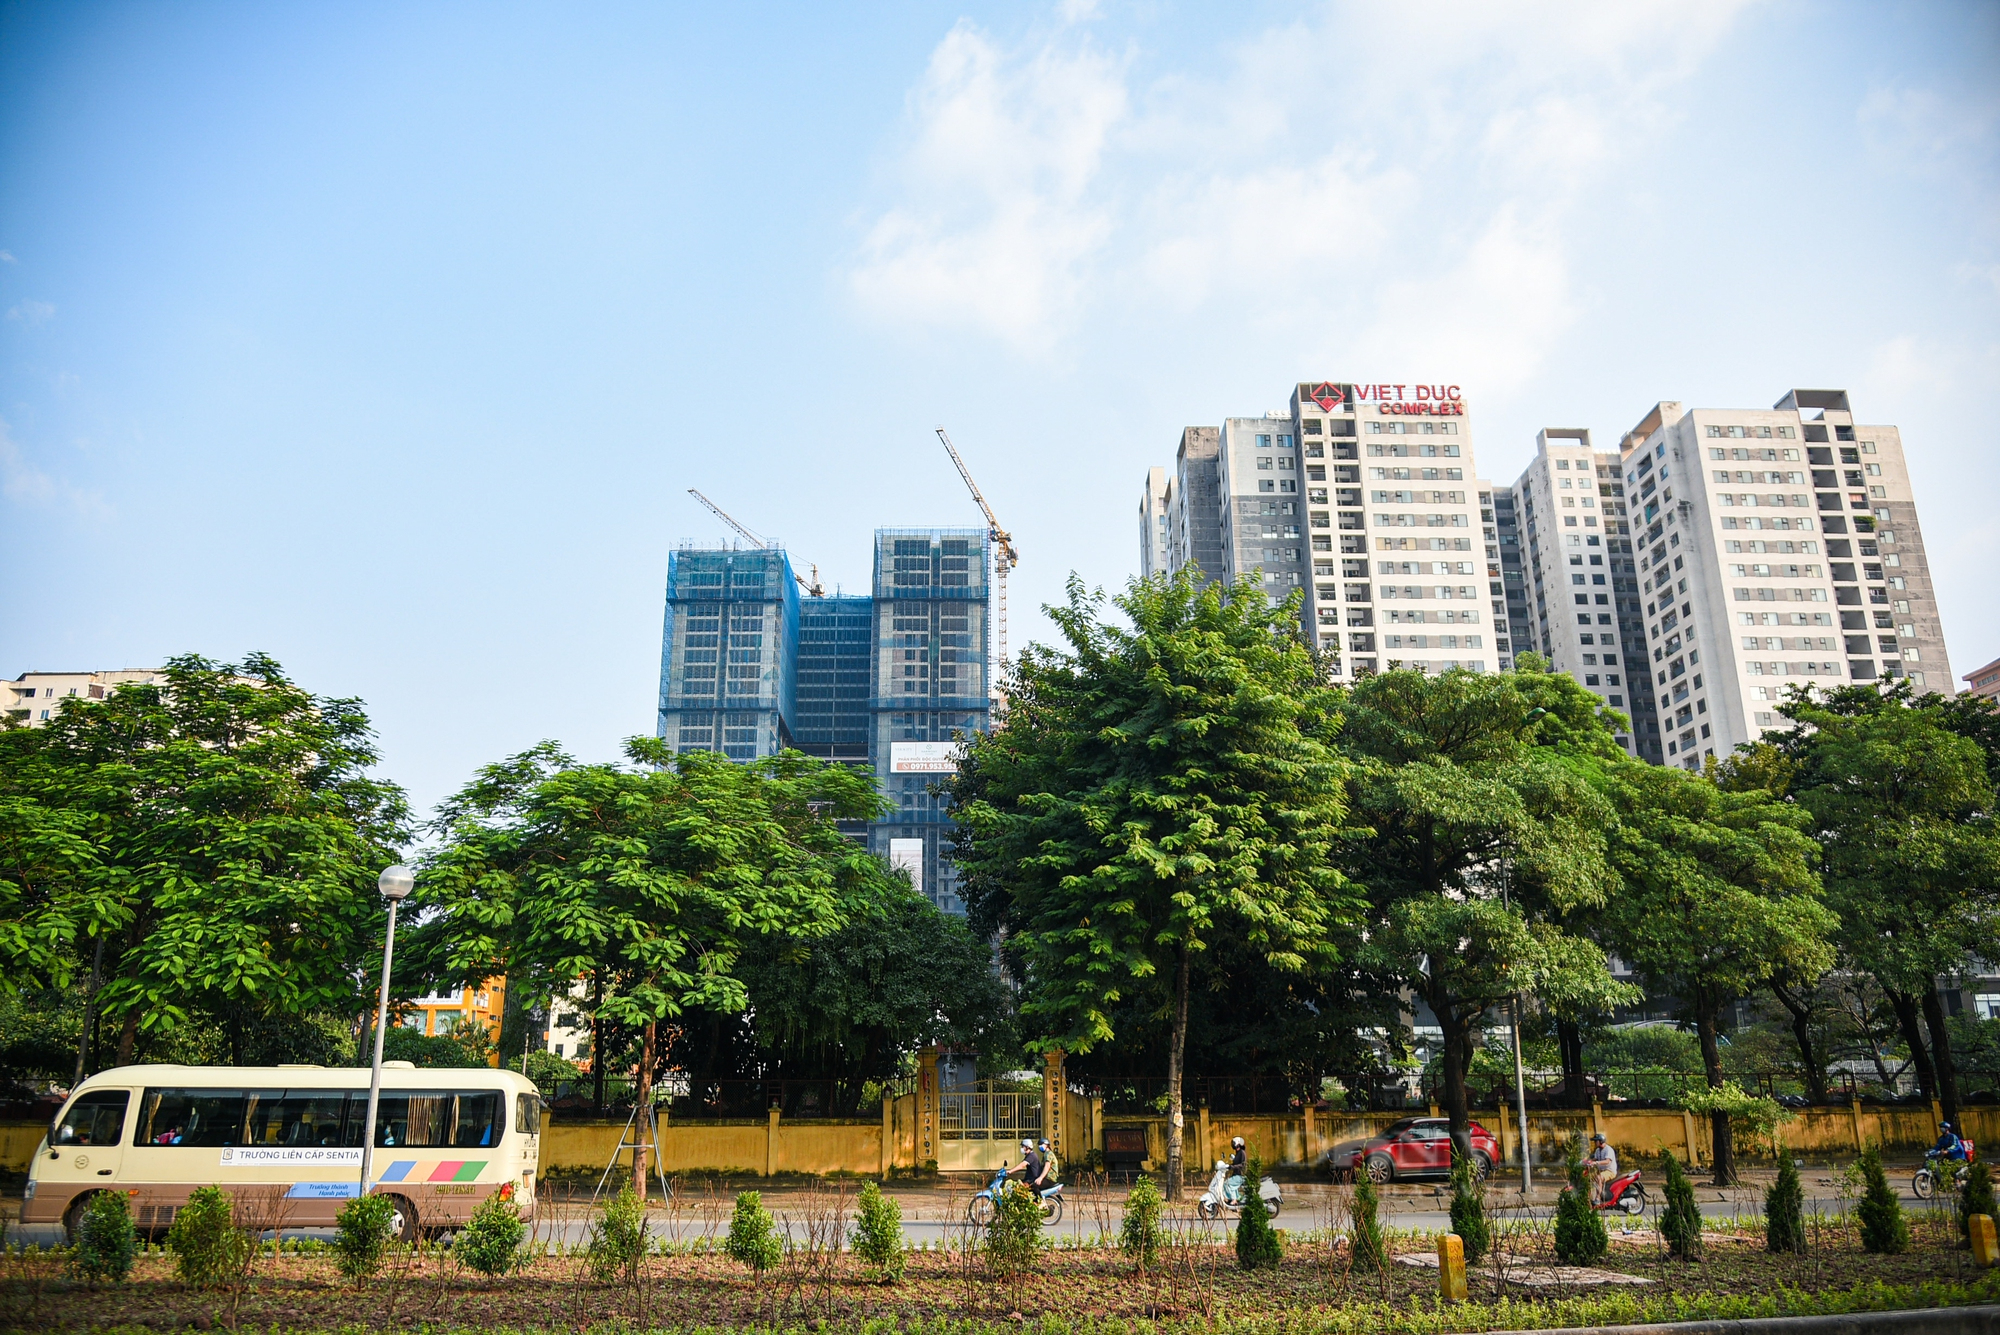 Cận cảnh các khu đất trường học, cây xanh ở Hà Nội bị quy hoạch vào nghĩa trang ở Thủ đô  - Ảnh 9.